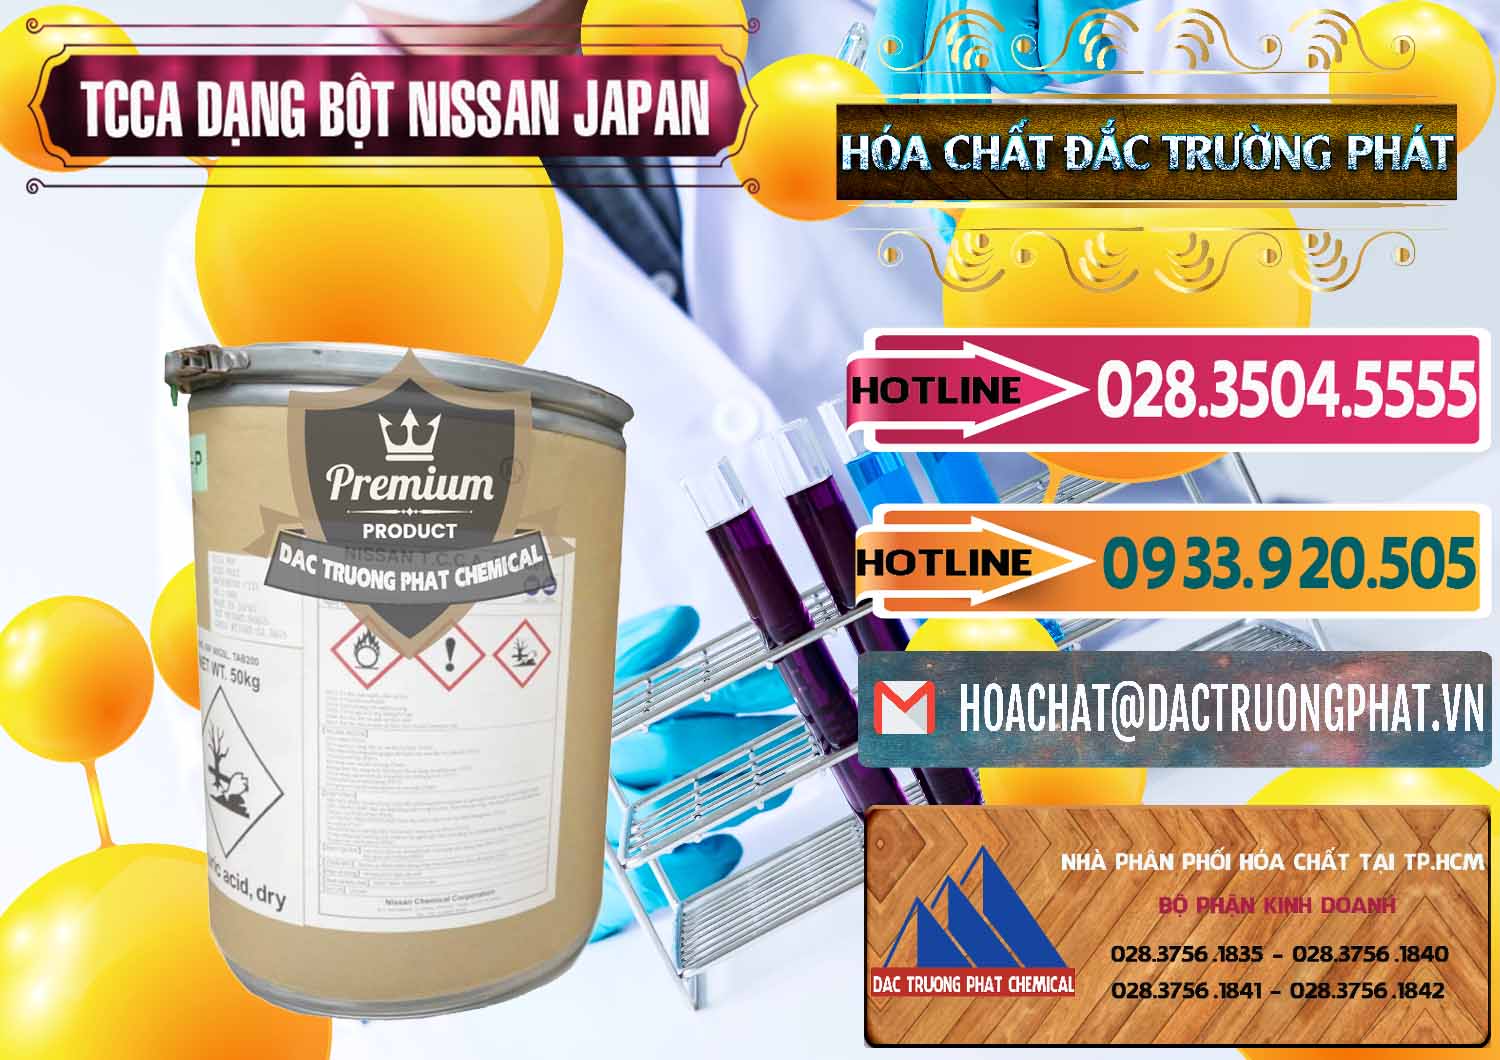 Kinh doanh ( bán ) TCCA - Acid Trichloroisocyanuric 90% Dạng Bột Nissan Nhật Bản Japan - 0375 - Cty bán - cung cấp hóa chất tại TP.HCM - dactruongphat.vn